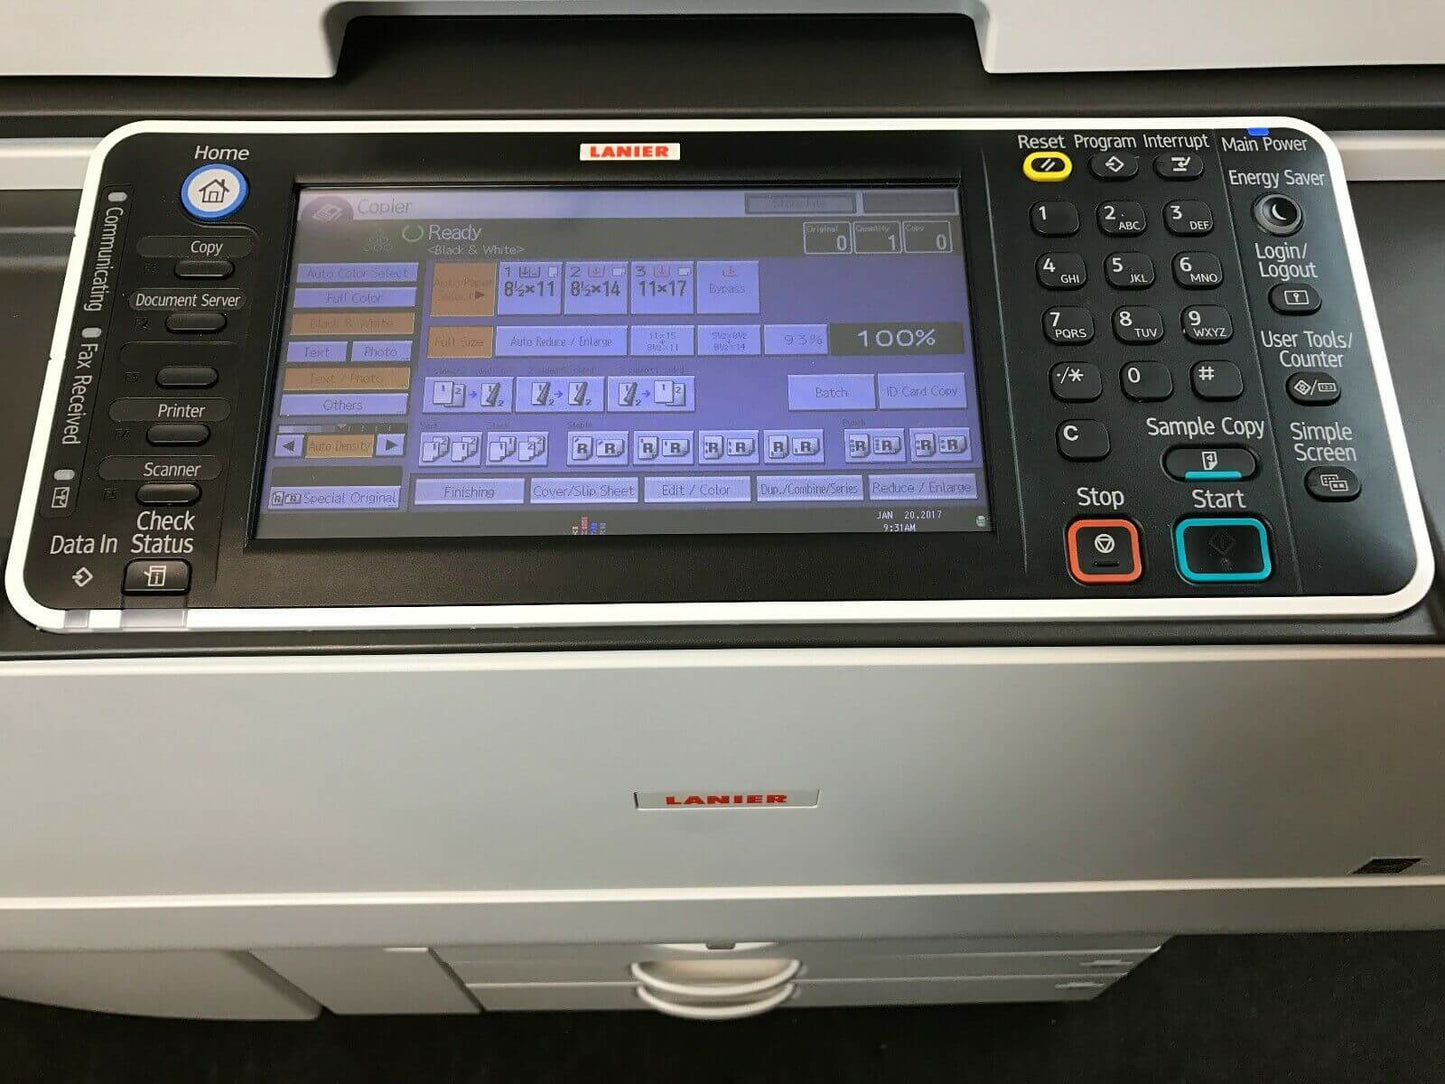 Ricoh Lanier Aficio MP C6502 Color Copier Printer Scanner Finisher LOW 589k page - copier-clearance-center